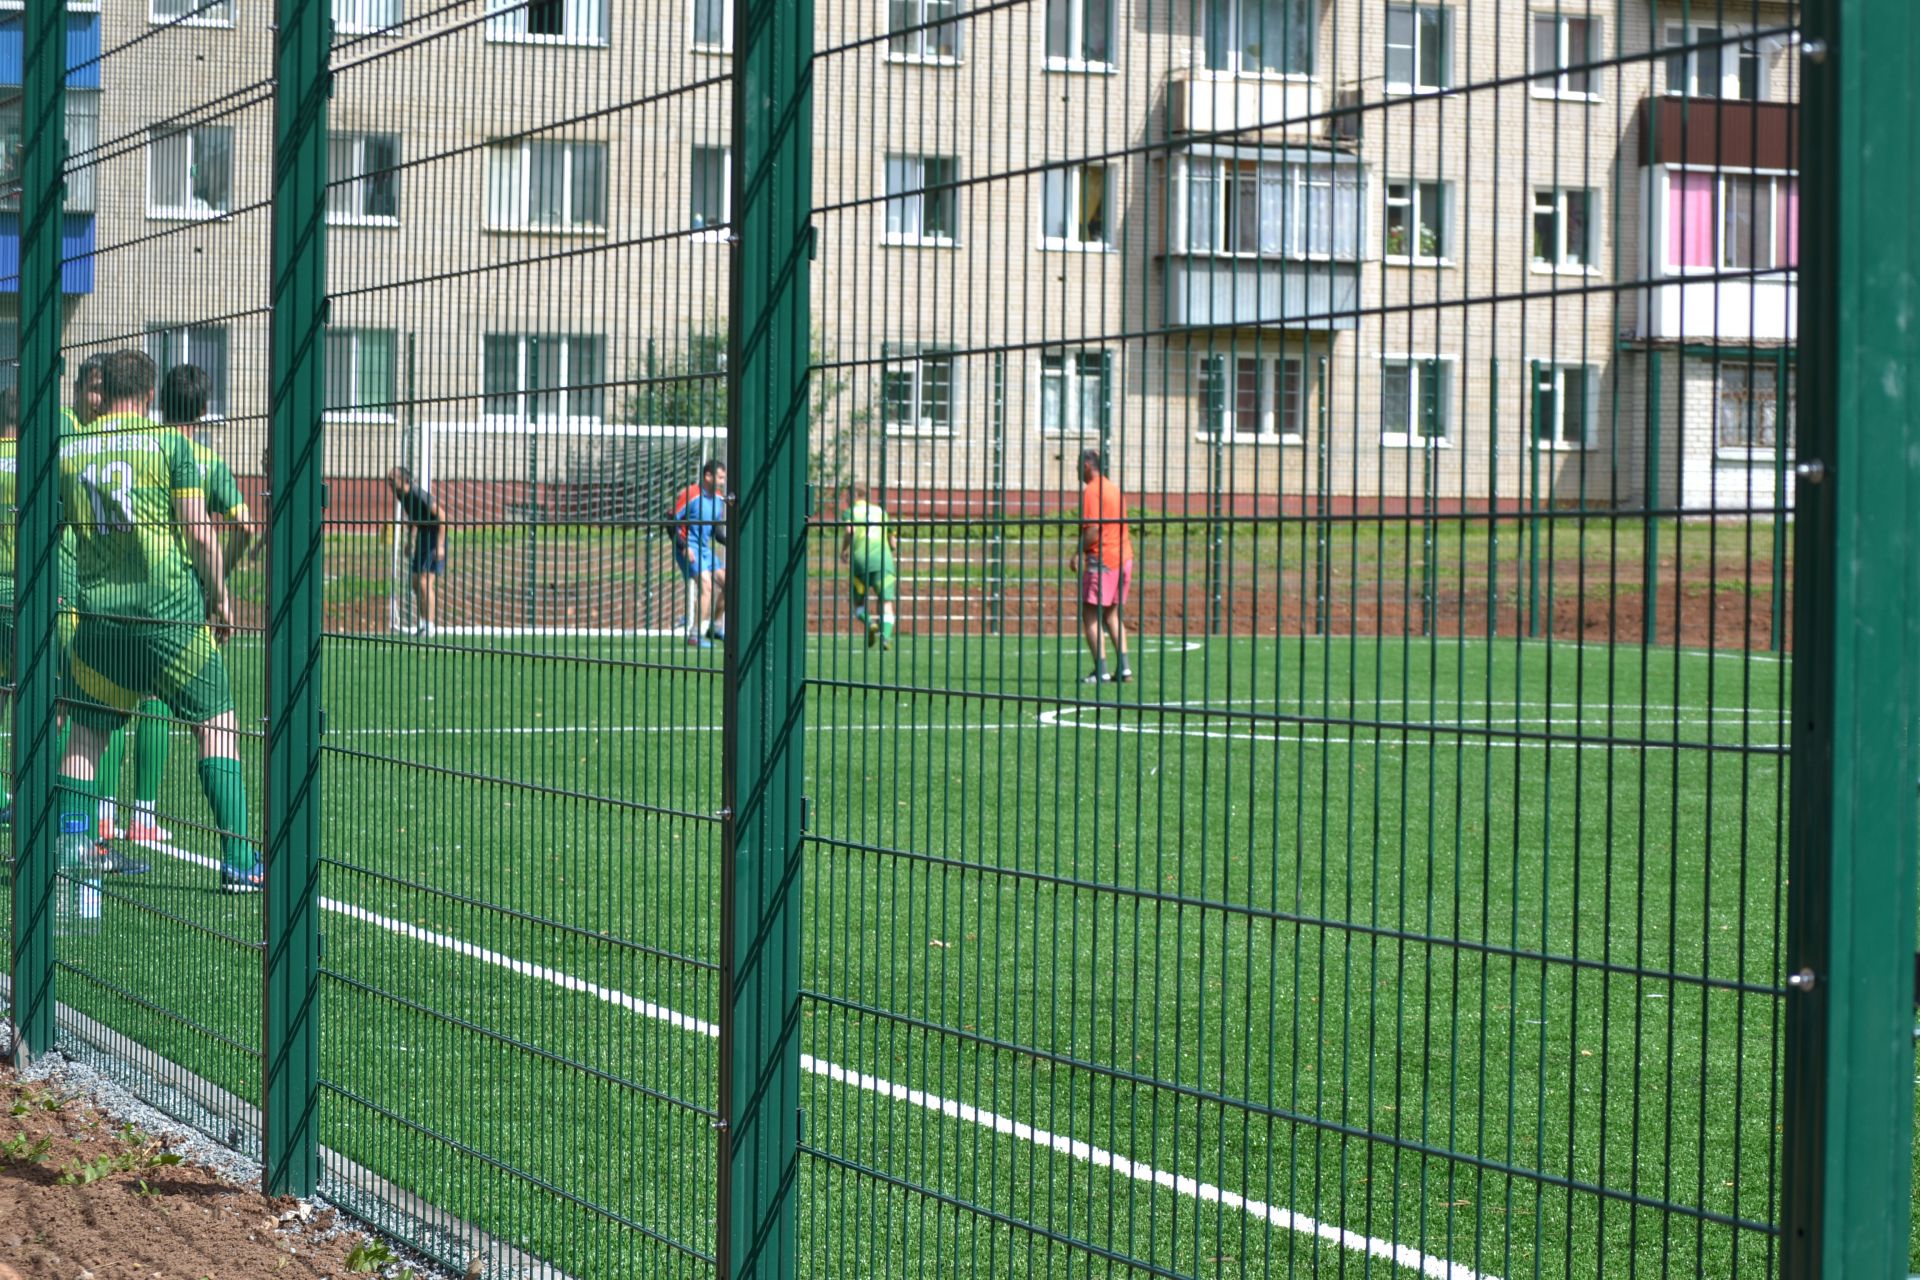 В Менделеевске открыли поле с искусственным покрытием для мини-футбола